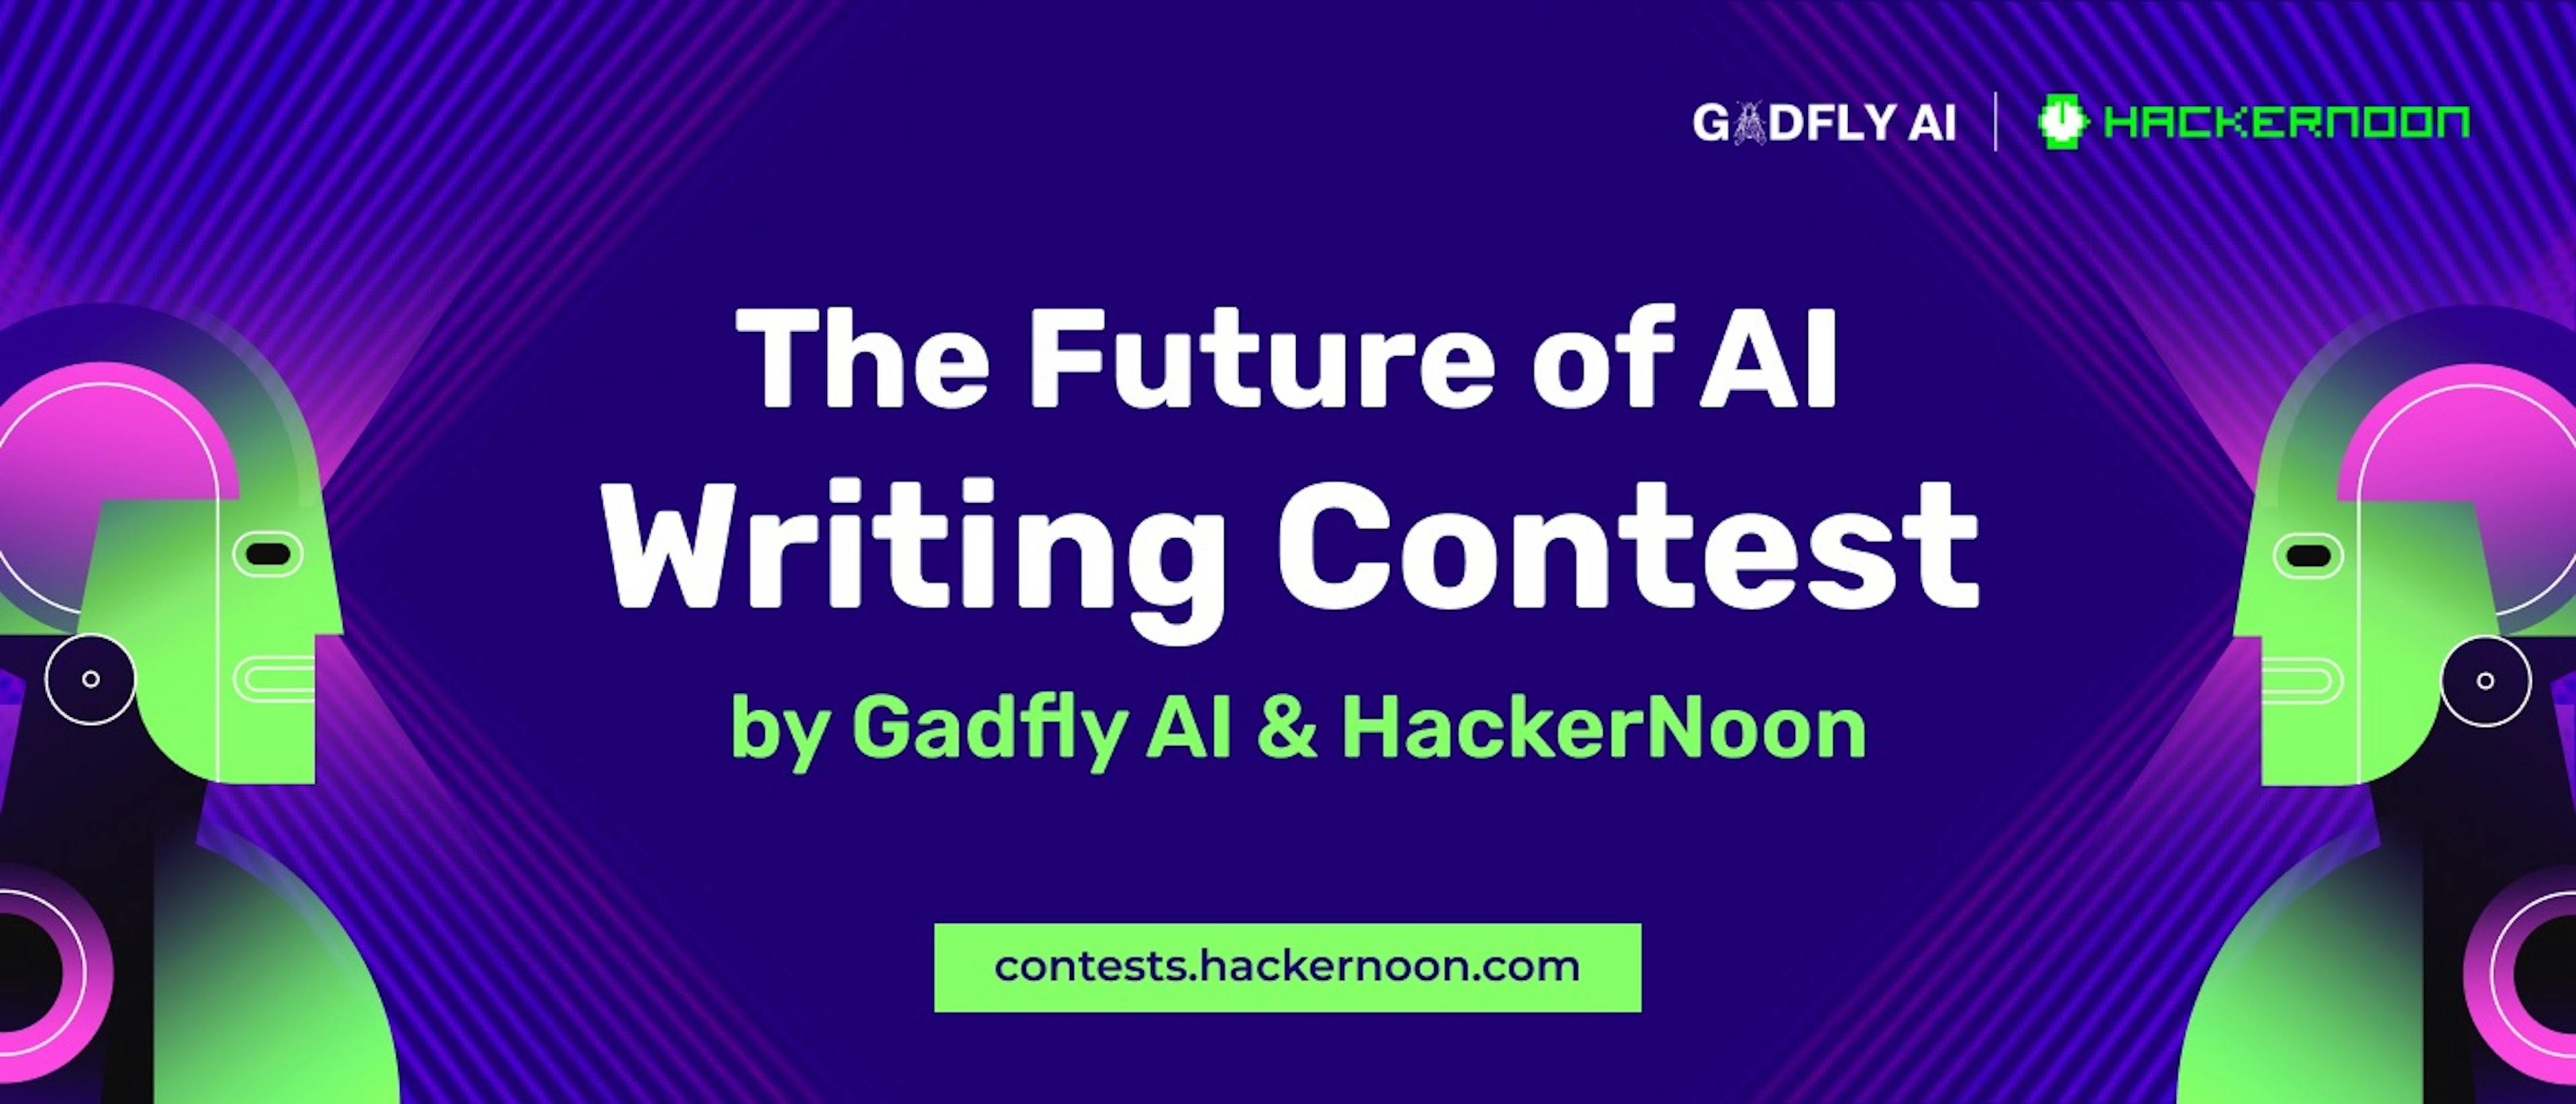 featured image - Cuộc thi viết về tương lai của AI bởi Gadfly AI